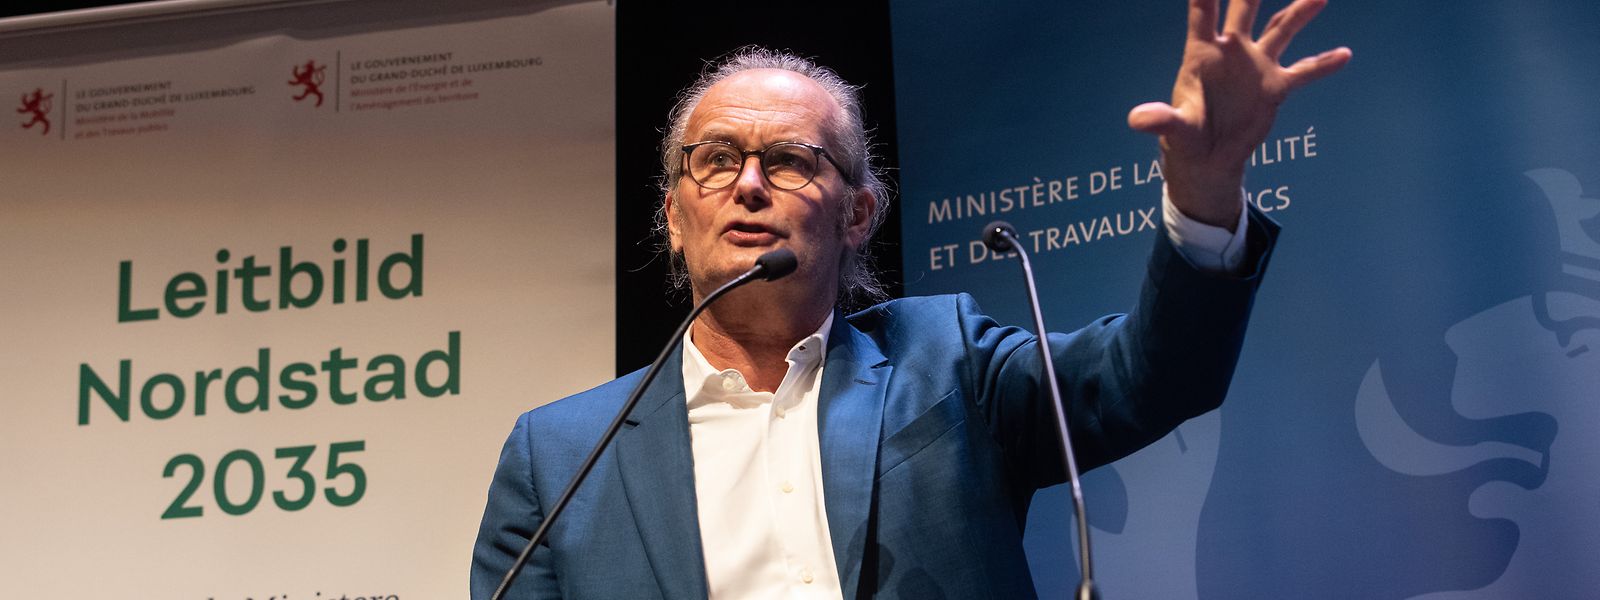 "Die Nordstad wird, neben Esch im Süden und Luxemburg-Stadt, die dritte große Agglomeration sein", meint der Minister für Raumentwicklung, Claude Trumes (déi gréng).